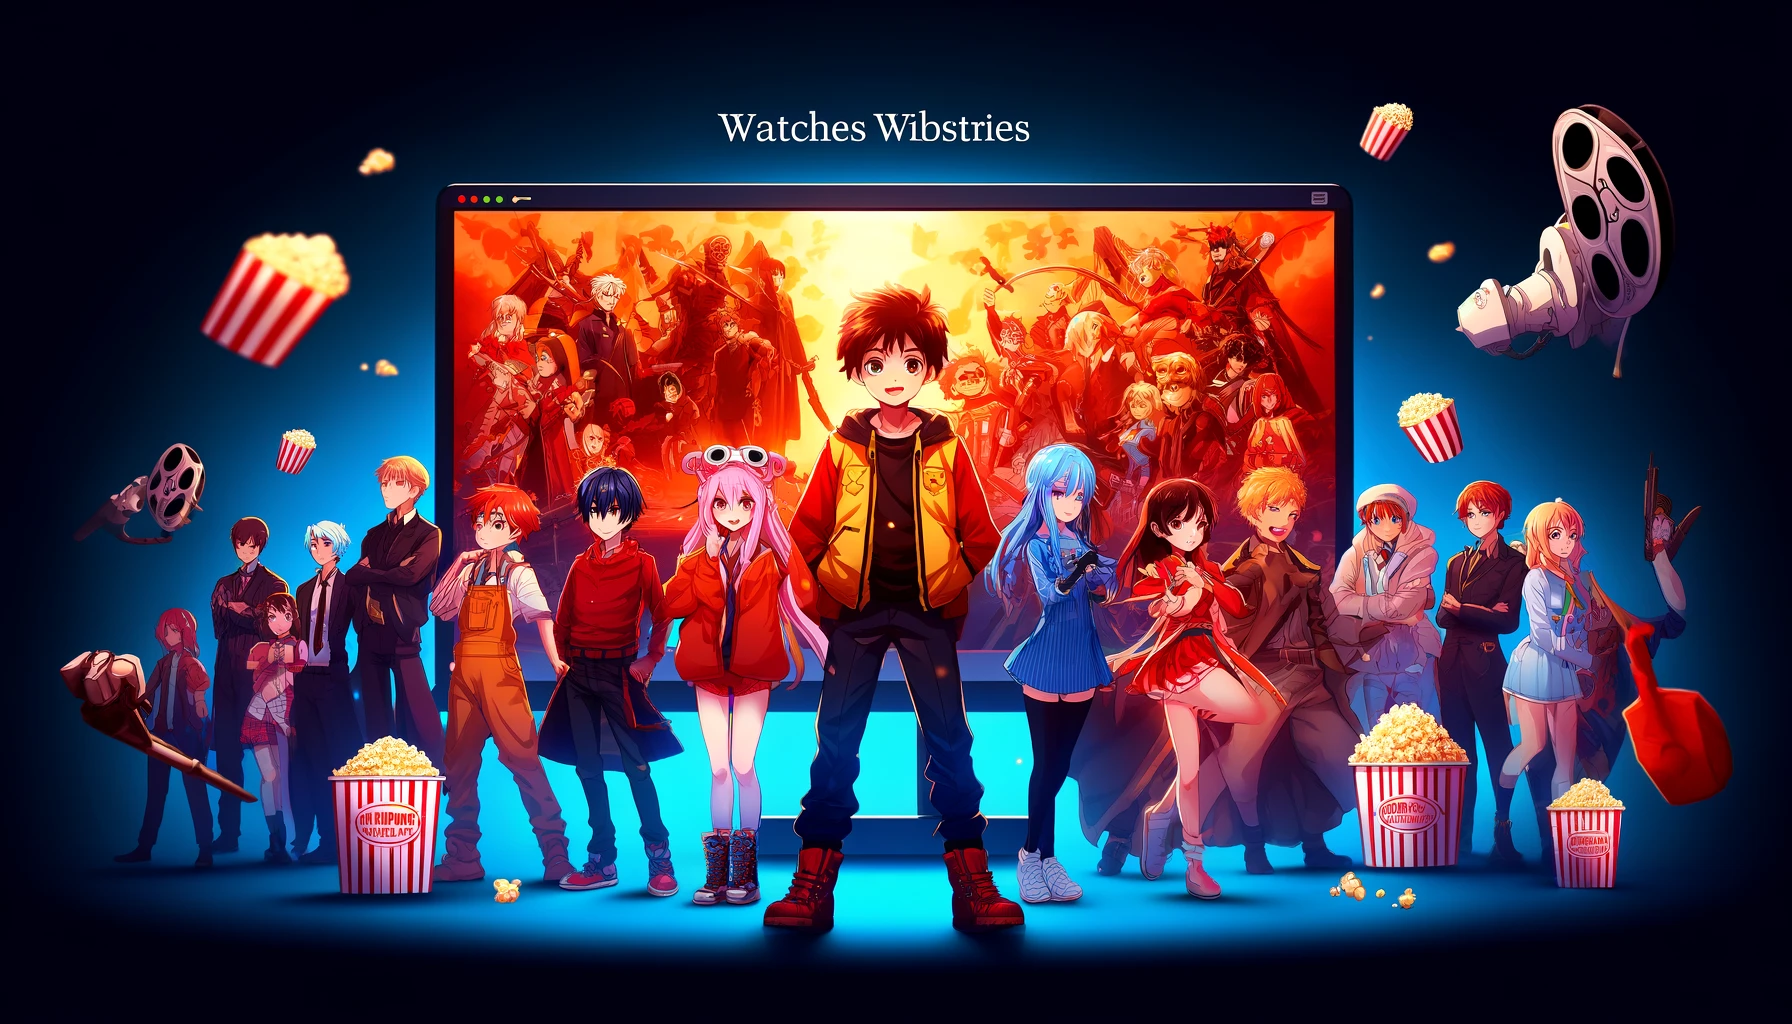 صورة تعرض مجموعة من الشخصيات الشهيرة من مسلسلات الأنمي المختلفة أمام شاشة عرض كبيرة.